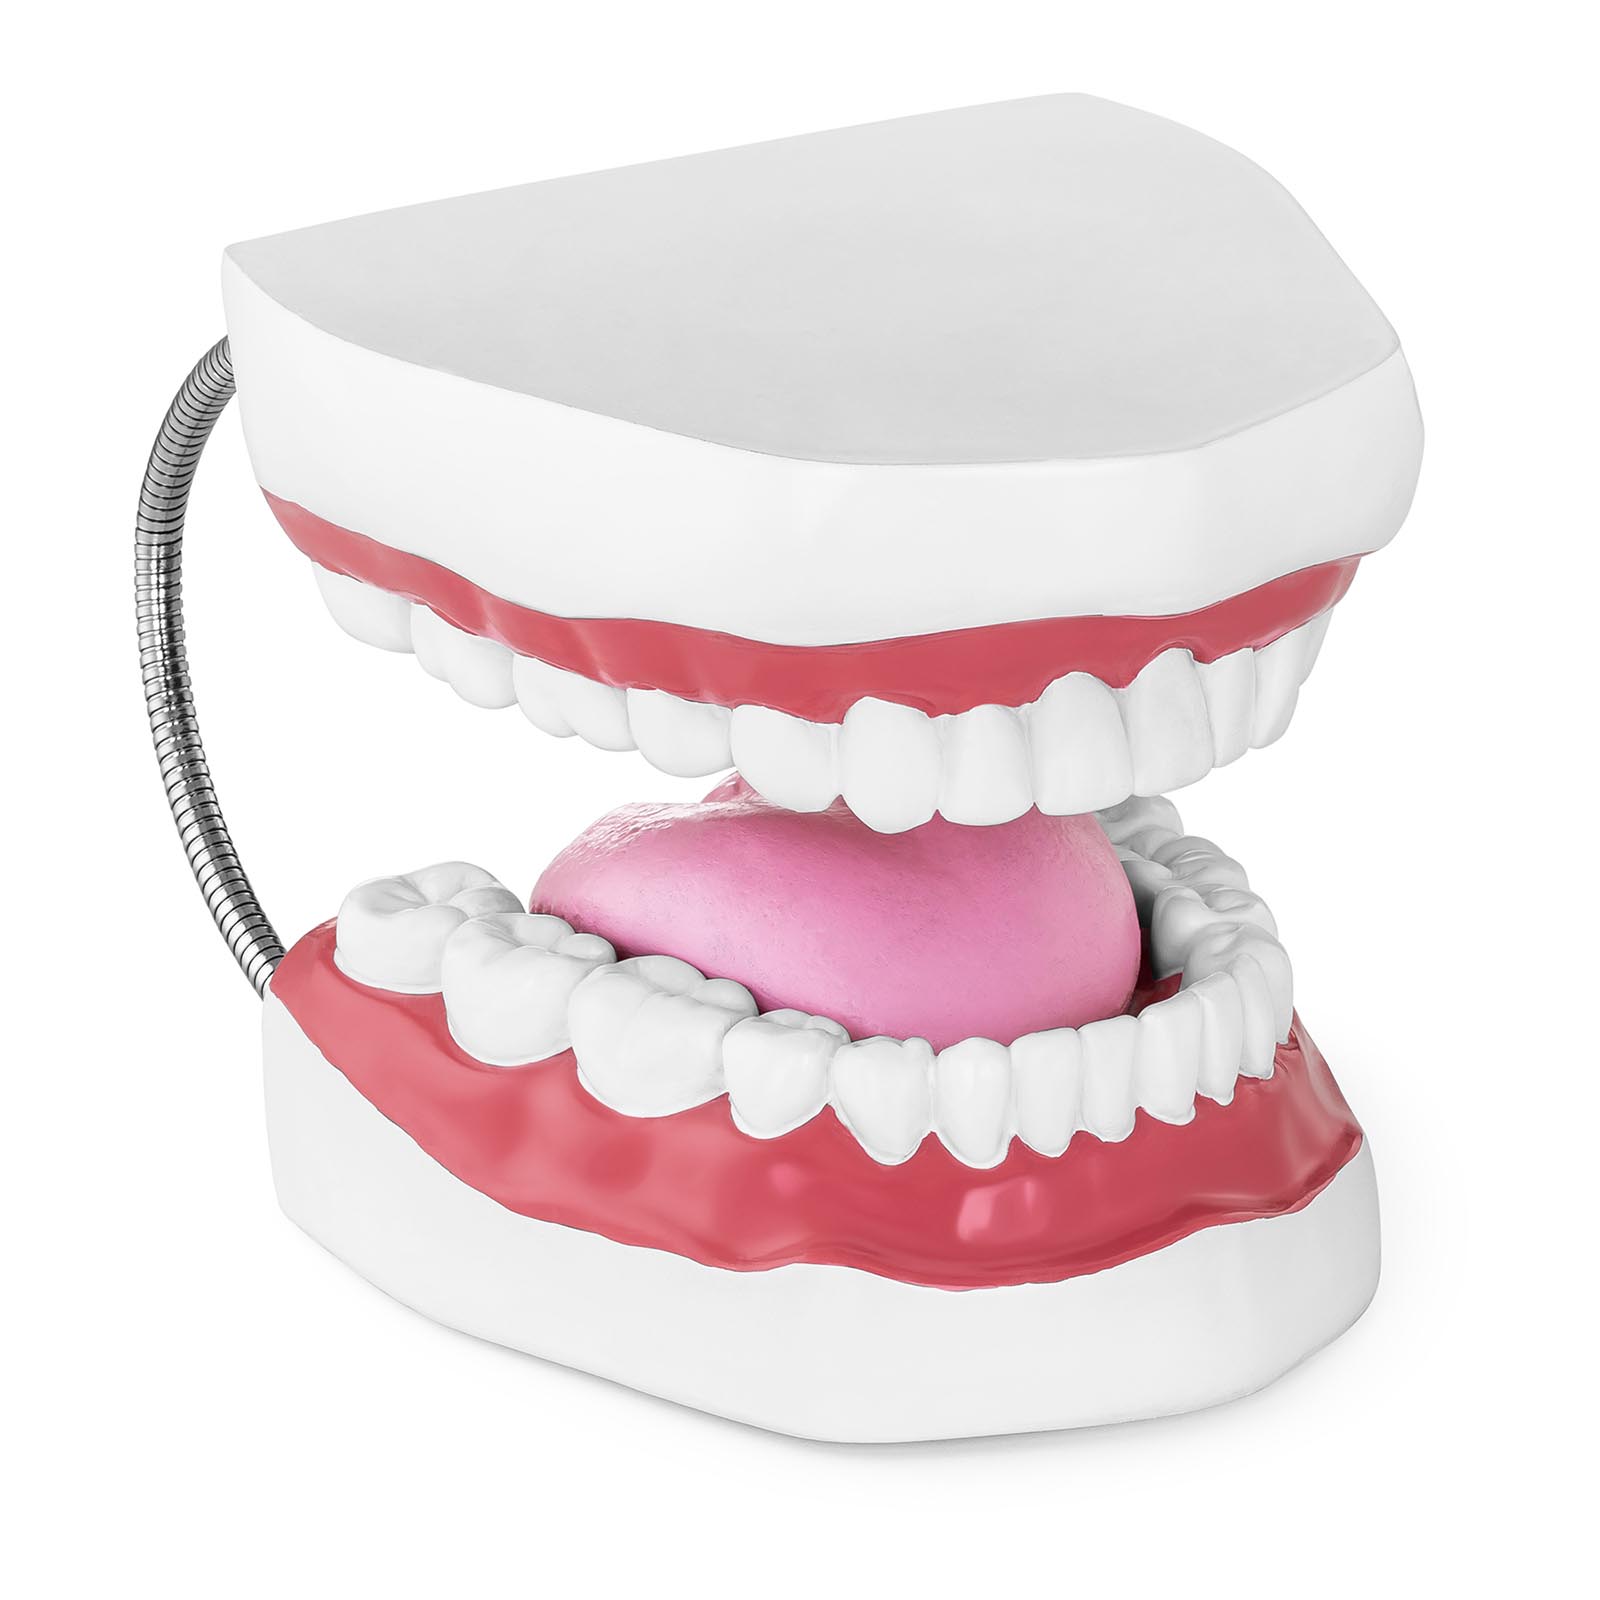 Модел на зъби - Комплект зъби